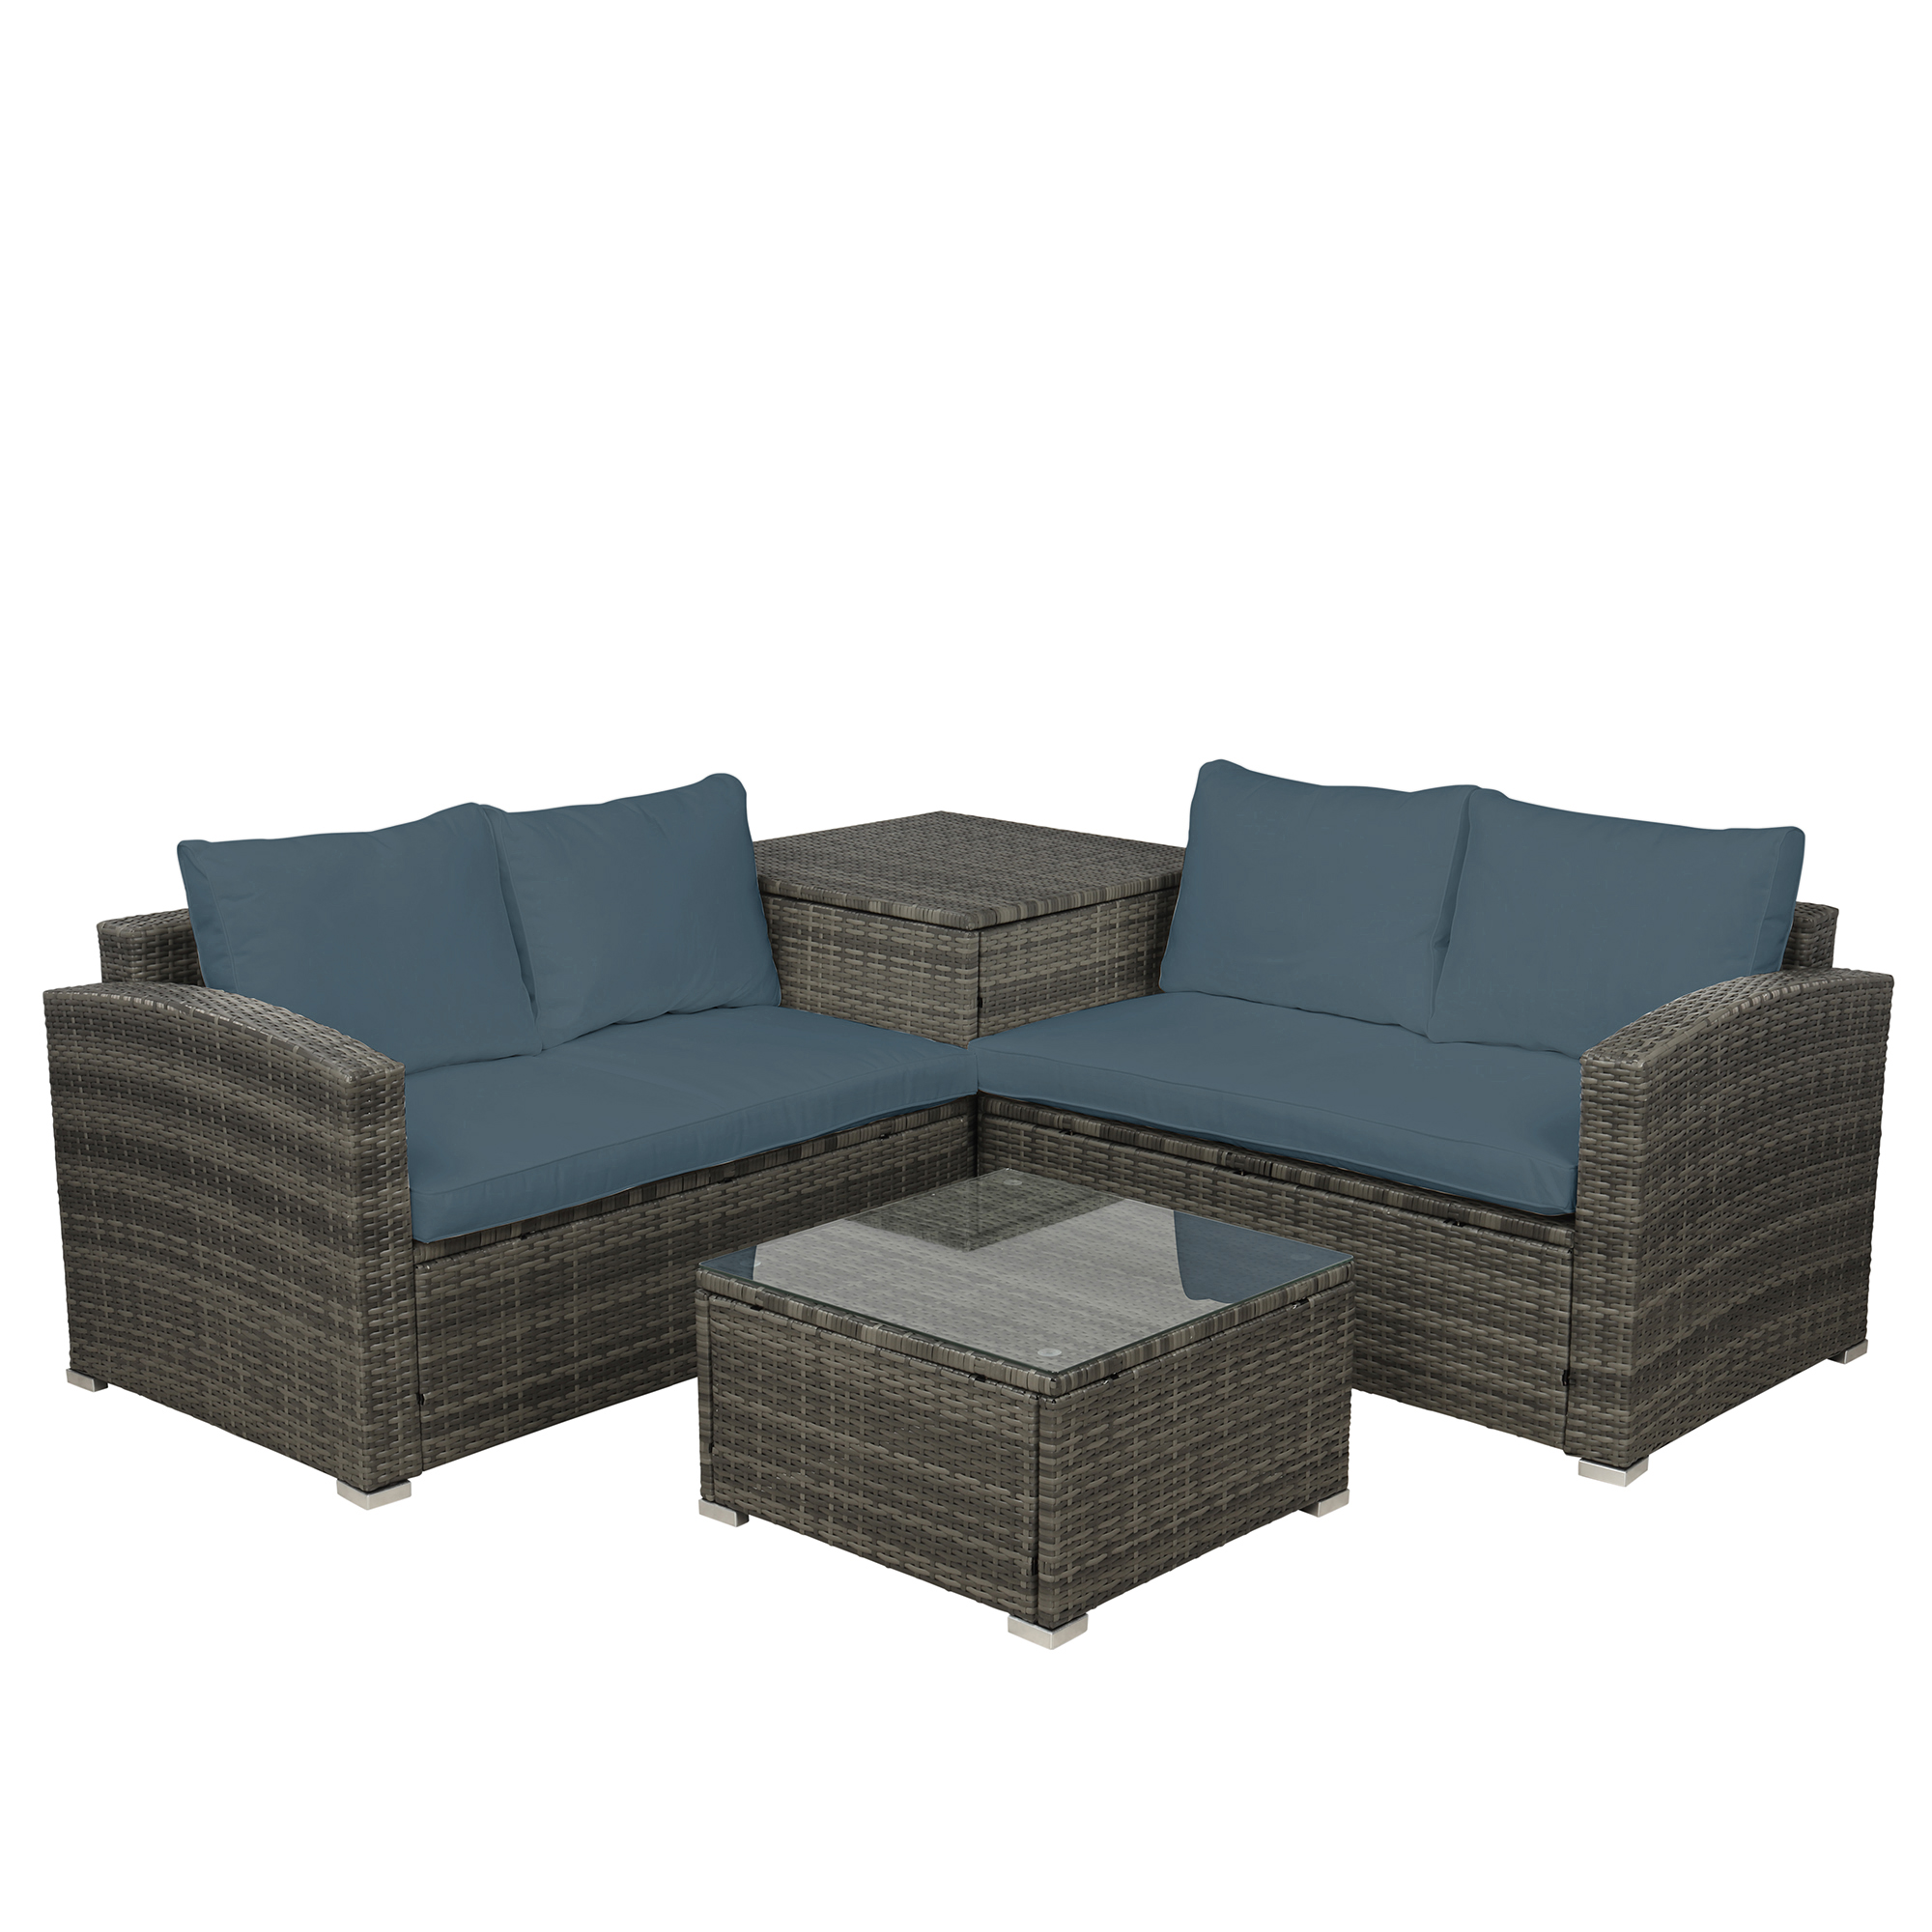  4 PCS Outdoor Cushioned PE Rattan Wicker Sectional Sofa Set Garden Patio Furniture Set (Gray Cushion)-CASAINC